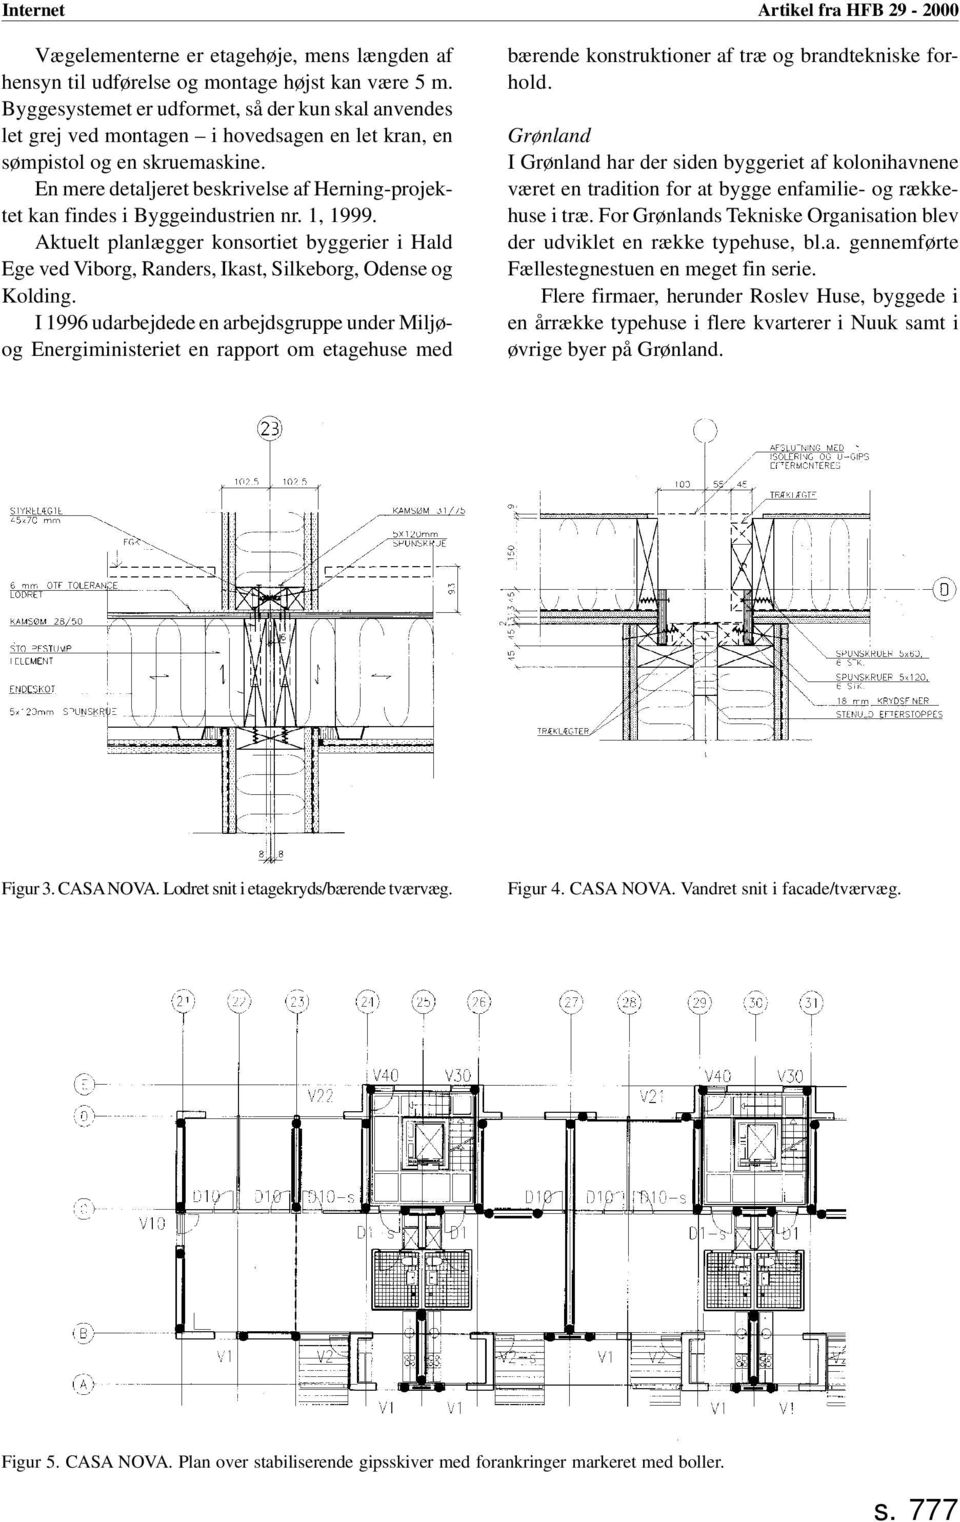 En mere detaljeret beskrivelse af Herning-projektet kan findes i Byggeindustrien nr. 1, 1999.